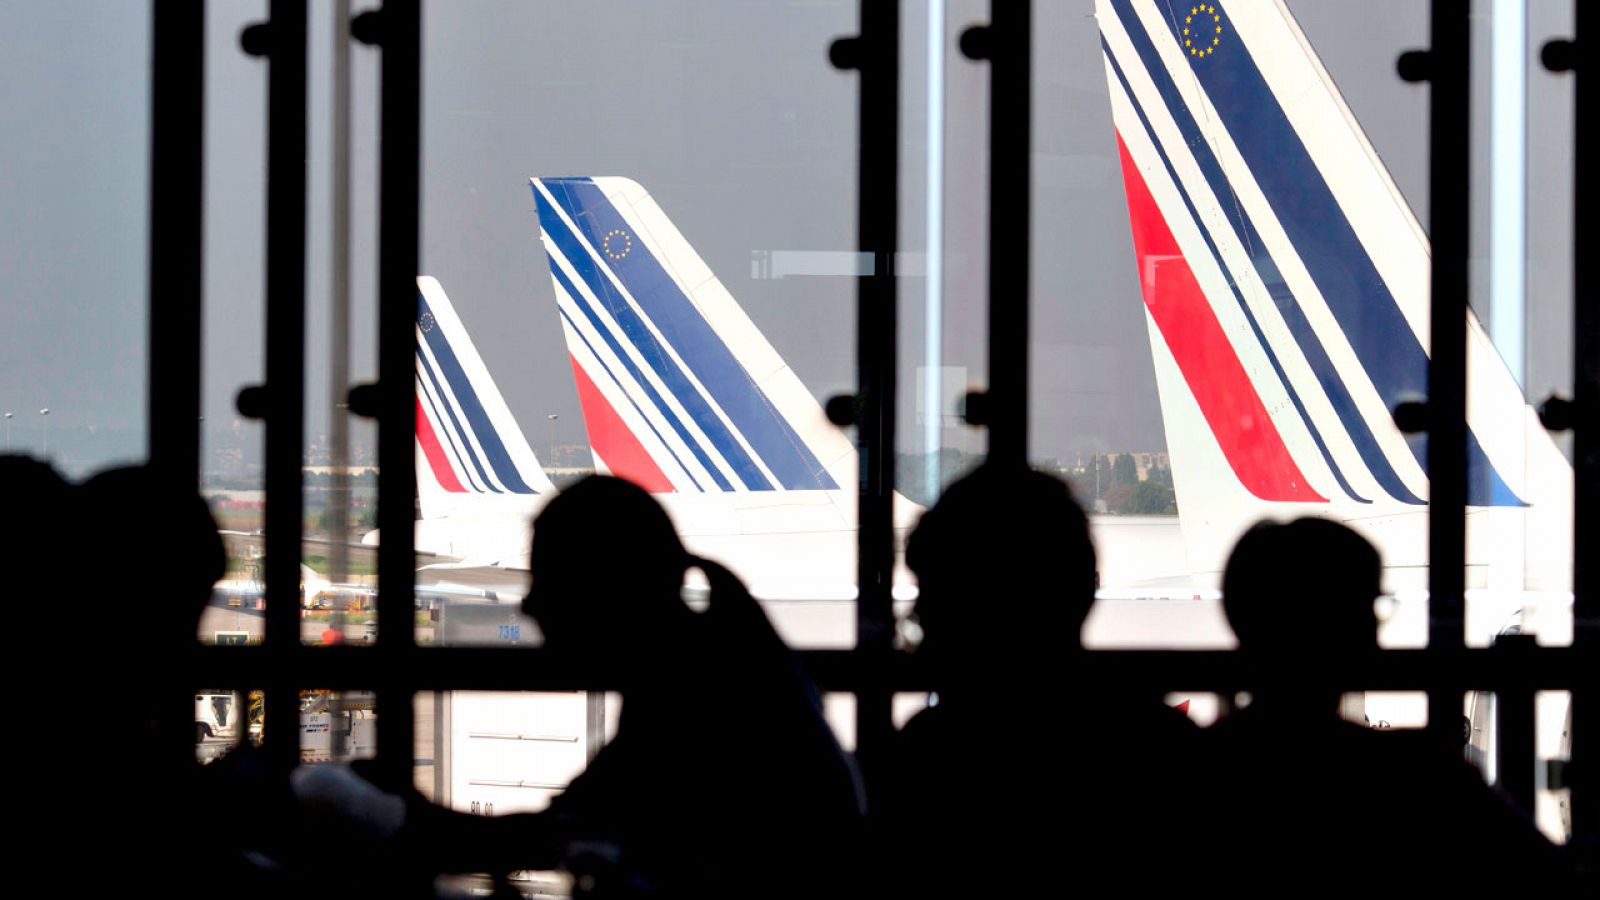 Un fallo técnico amenaza con retrasar la mitad de los vuelos en Europa